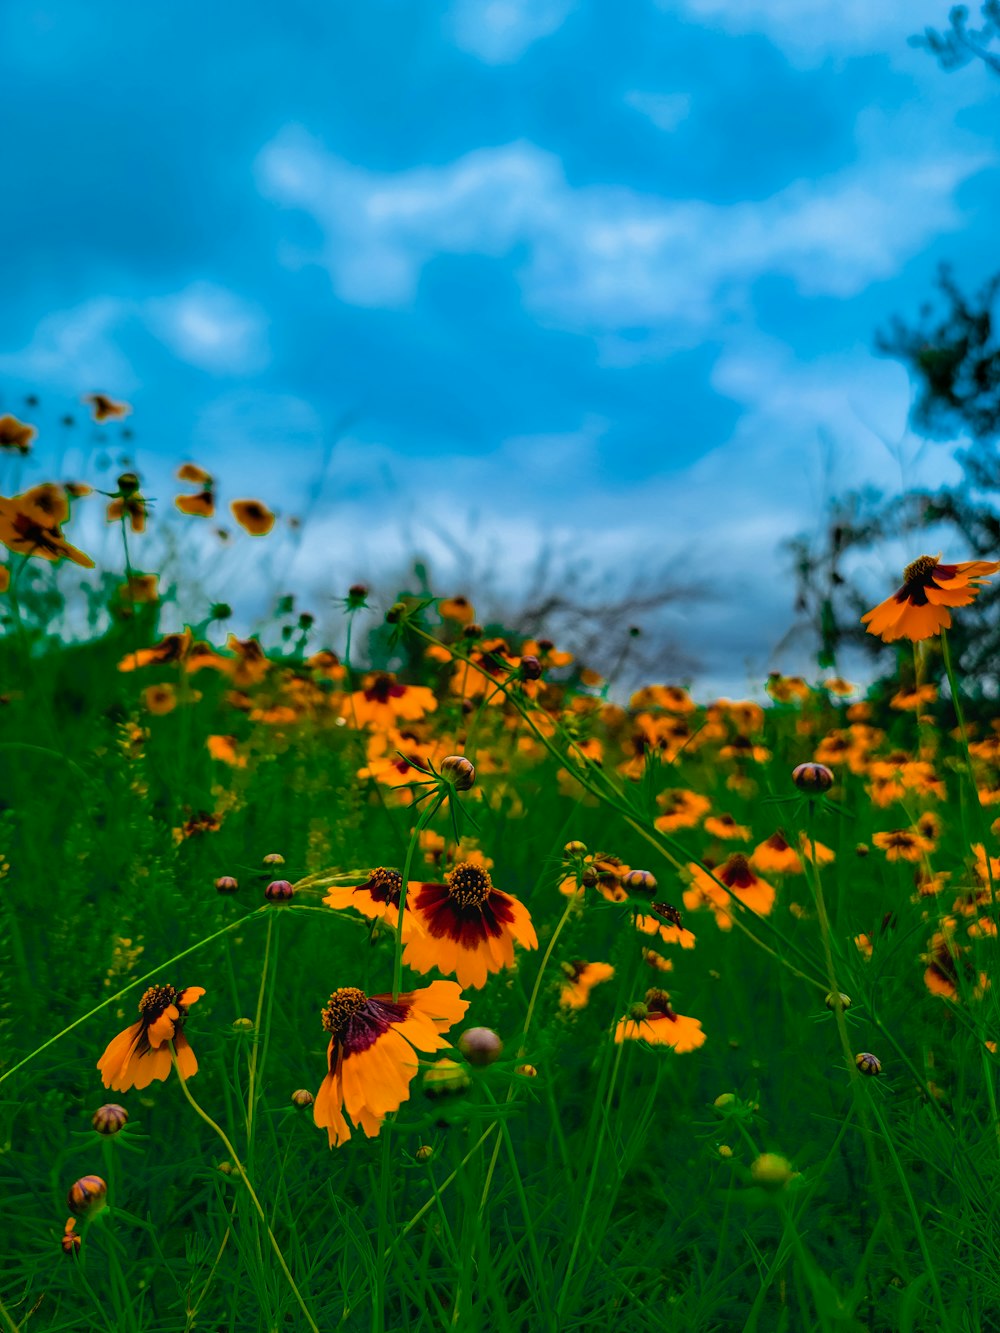 Ein Feld voller gelber Blumen unter einem bewölkten blauen Himmel